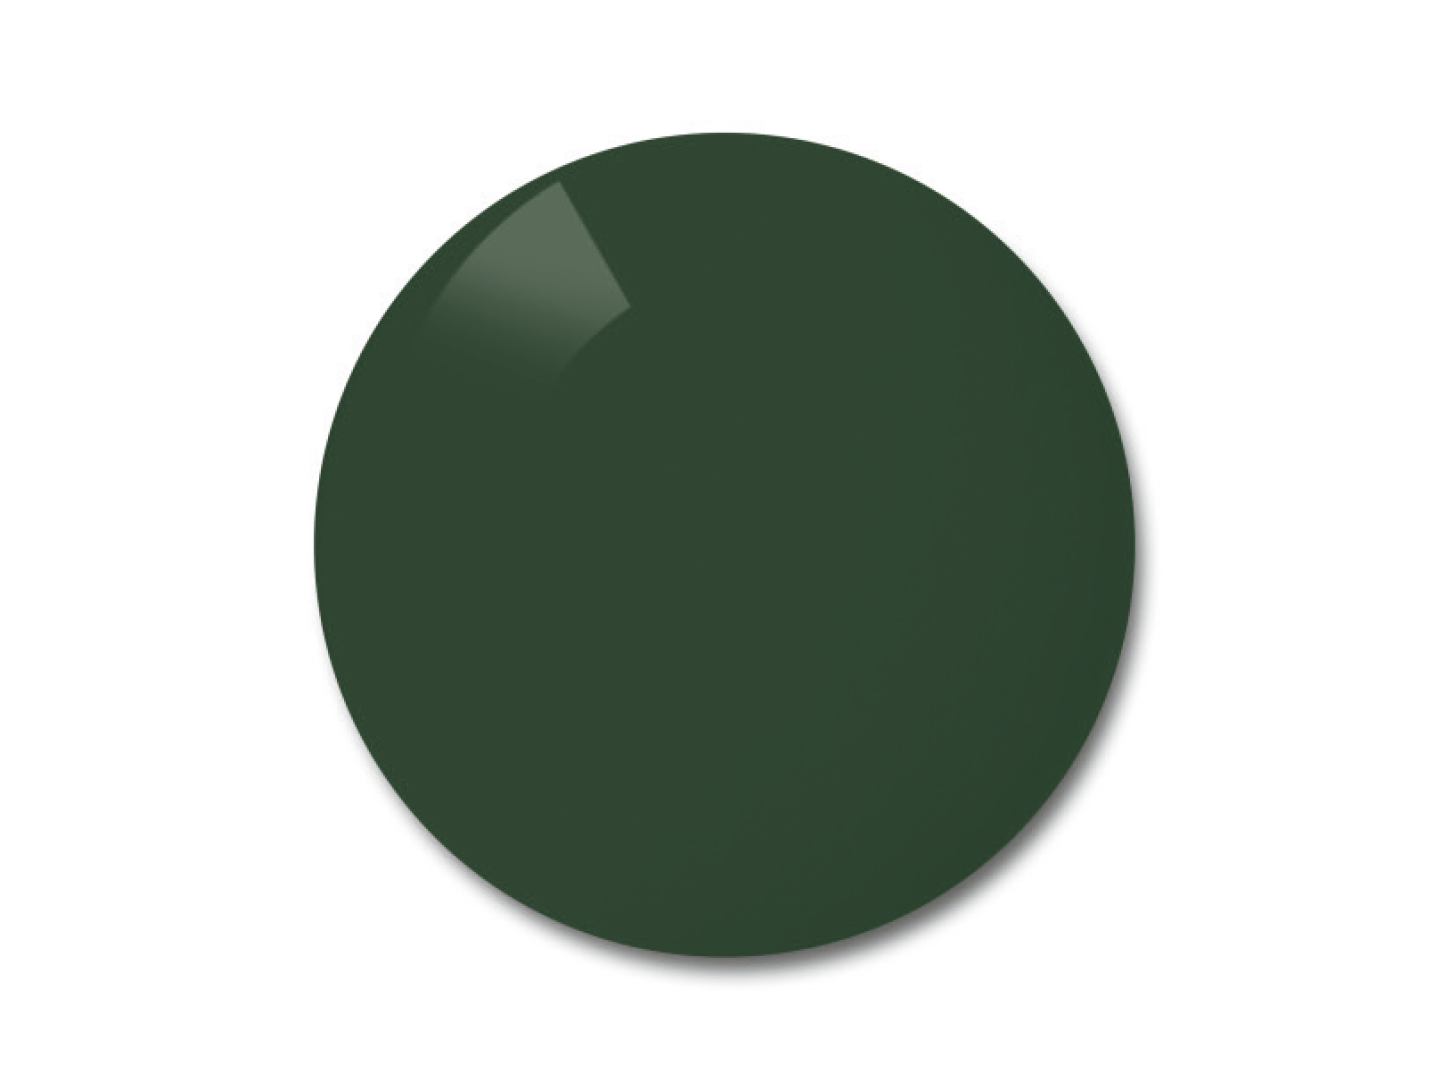 Зображення поляризованої лінзи ZEISS у кольоровому варіанті Pioneer (сіро-зелене тонування лінзи) 